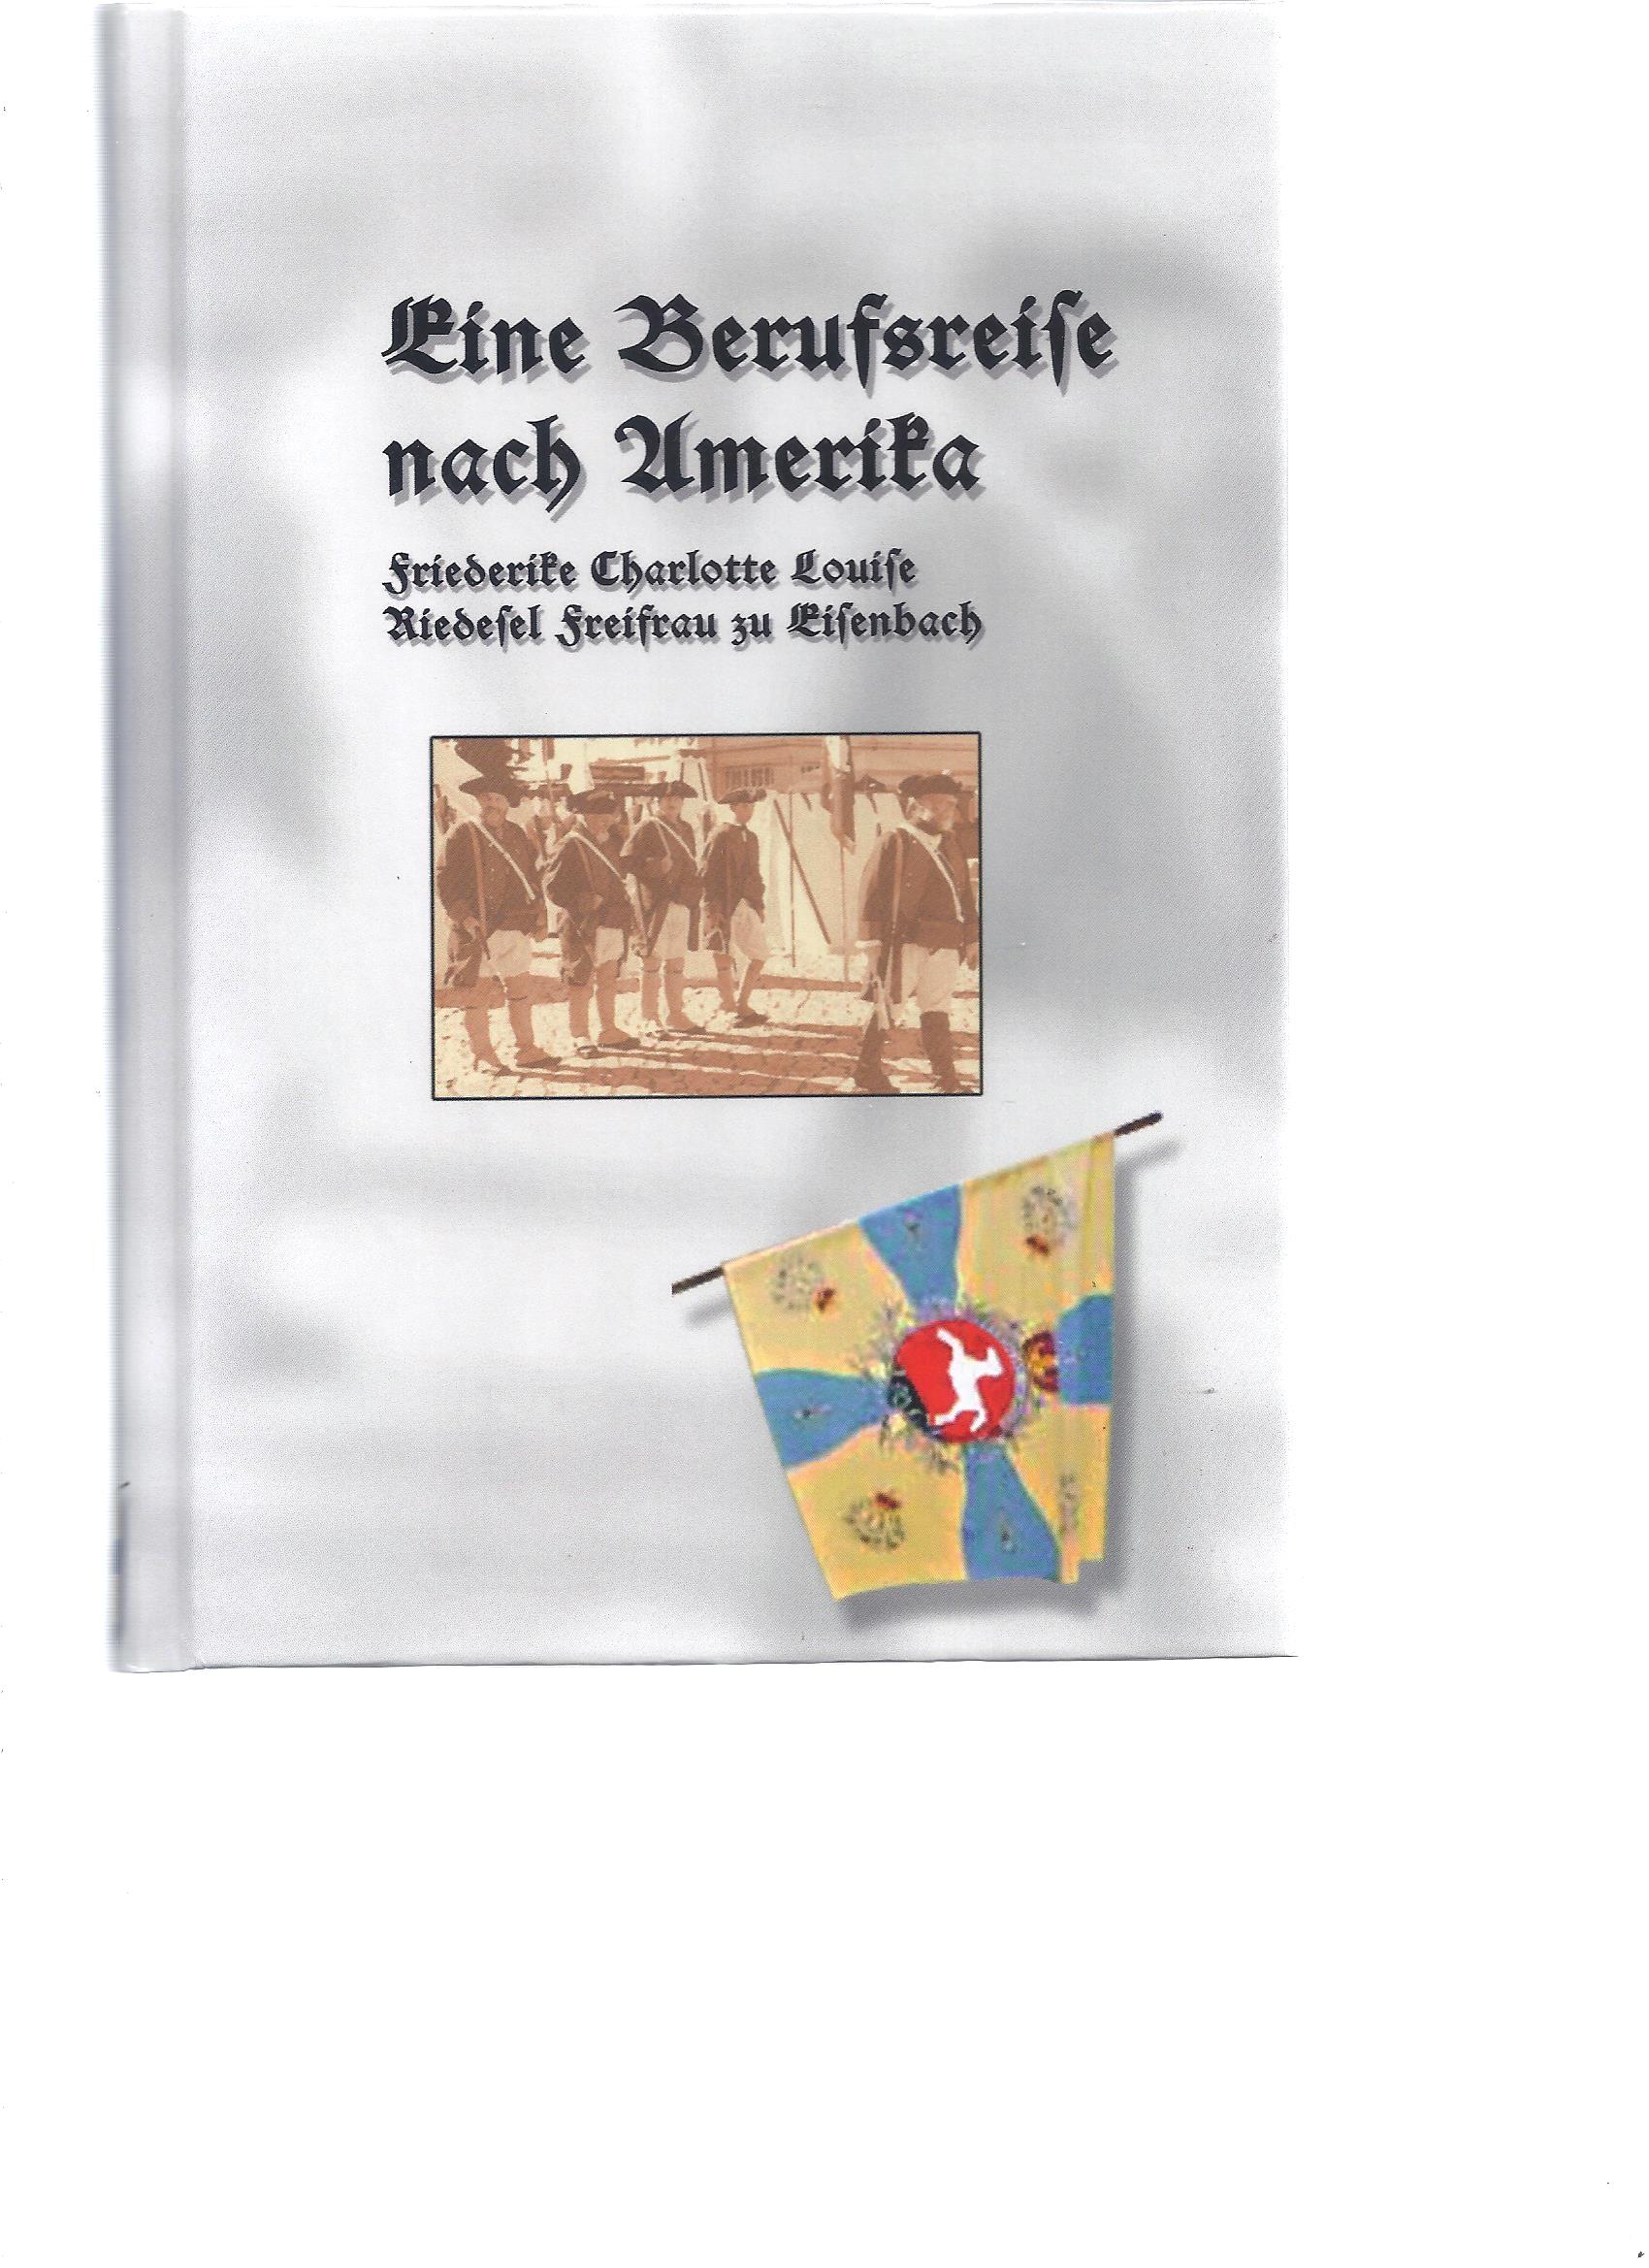 Eine Berufsreise nach Amerika. Neuausgabe nach der Edition von 1801 - Riedesel Freifrau zu Eisenbach, Friederike Charlotte Louise